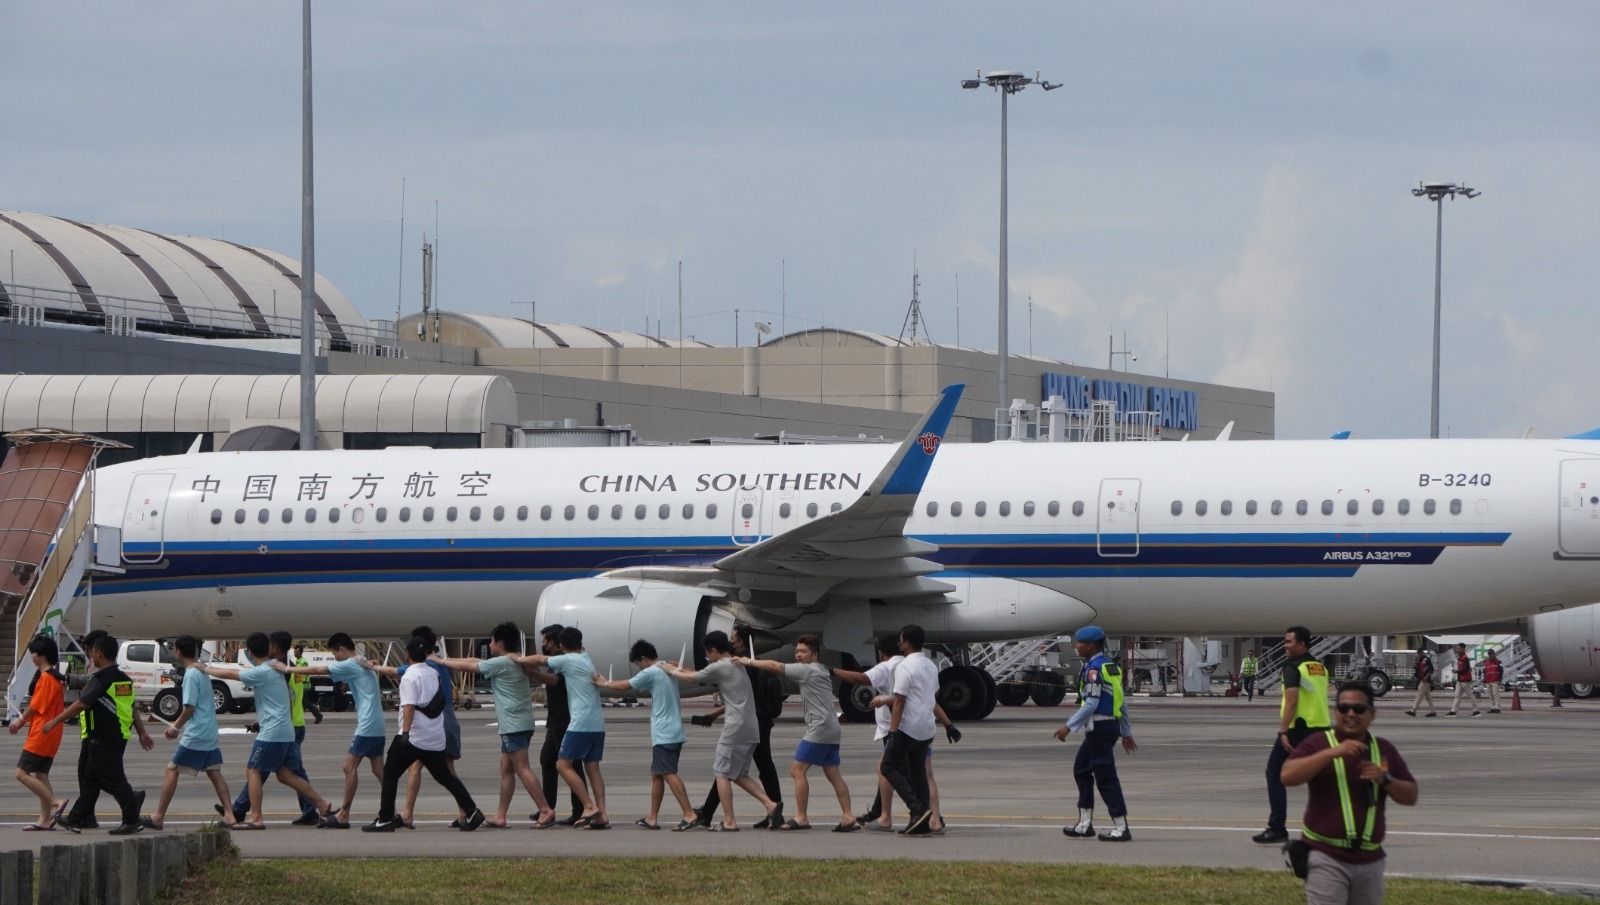 Sebanyak 153 tersangka kasus love scamming yang merupakan Warga Negara Asing (WNA) China diulangkan dari Indonesia melalui Bandara Internasional Hang Nadim Batam. Indonesia tidak terima dijadikan sarang tindak penipuan.